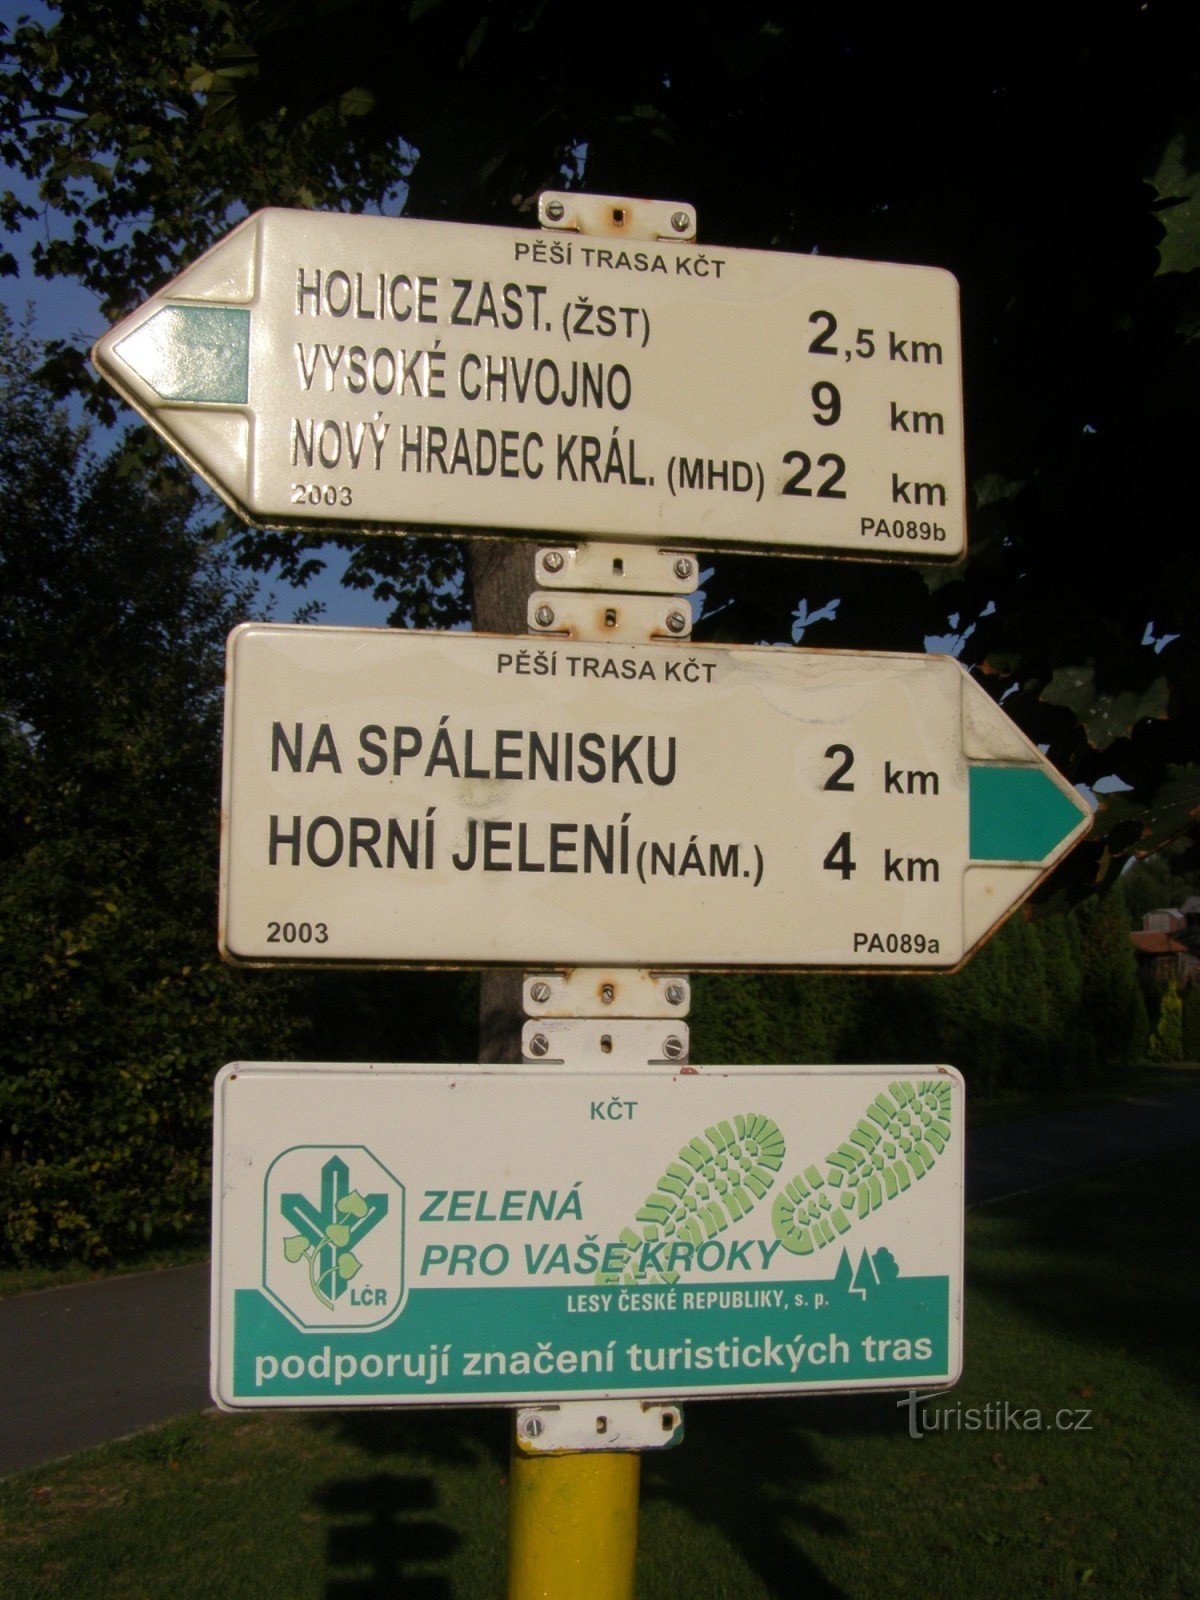 het toeristische kruispunt van Velina